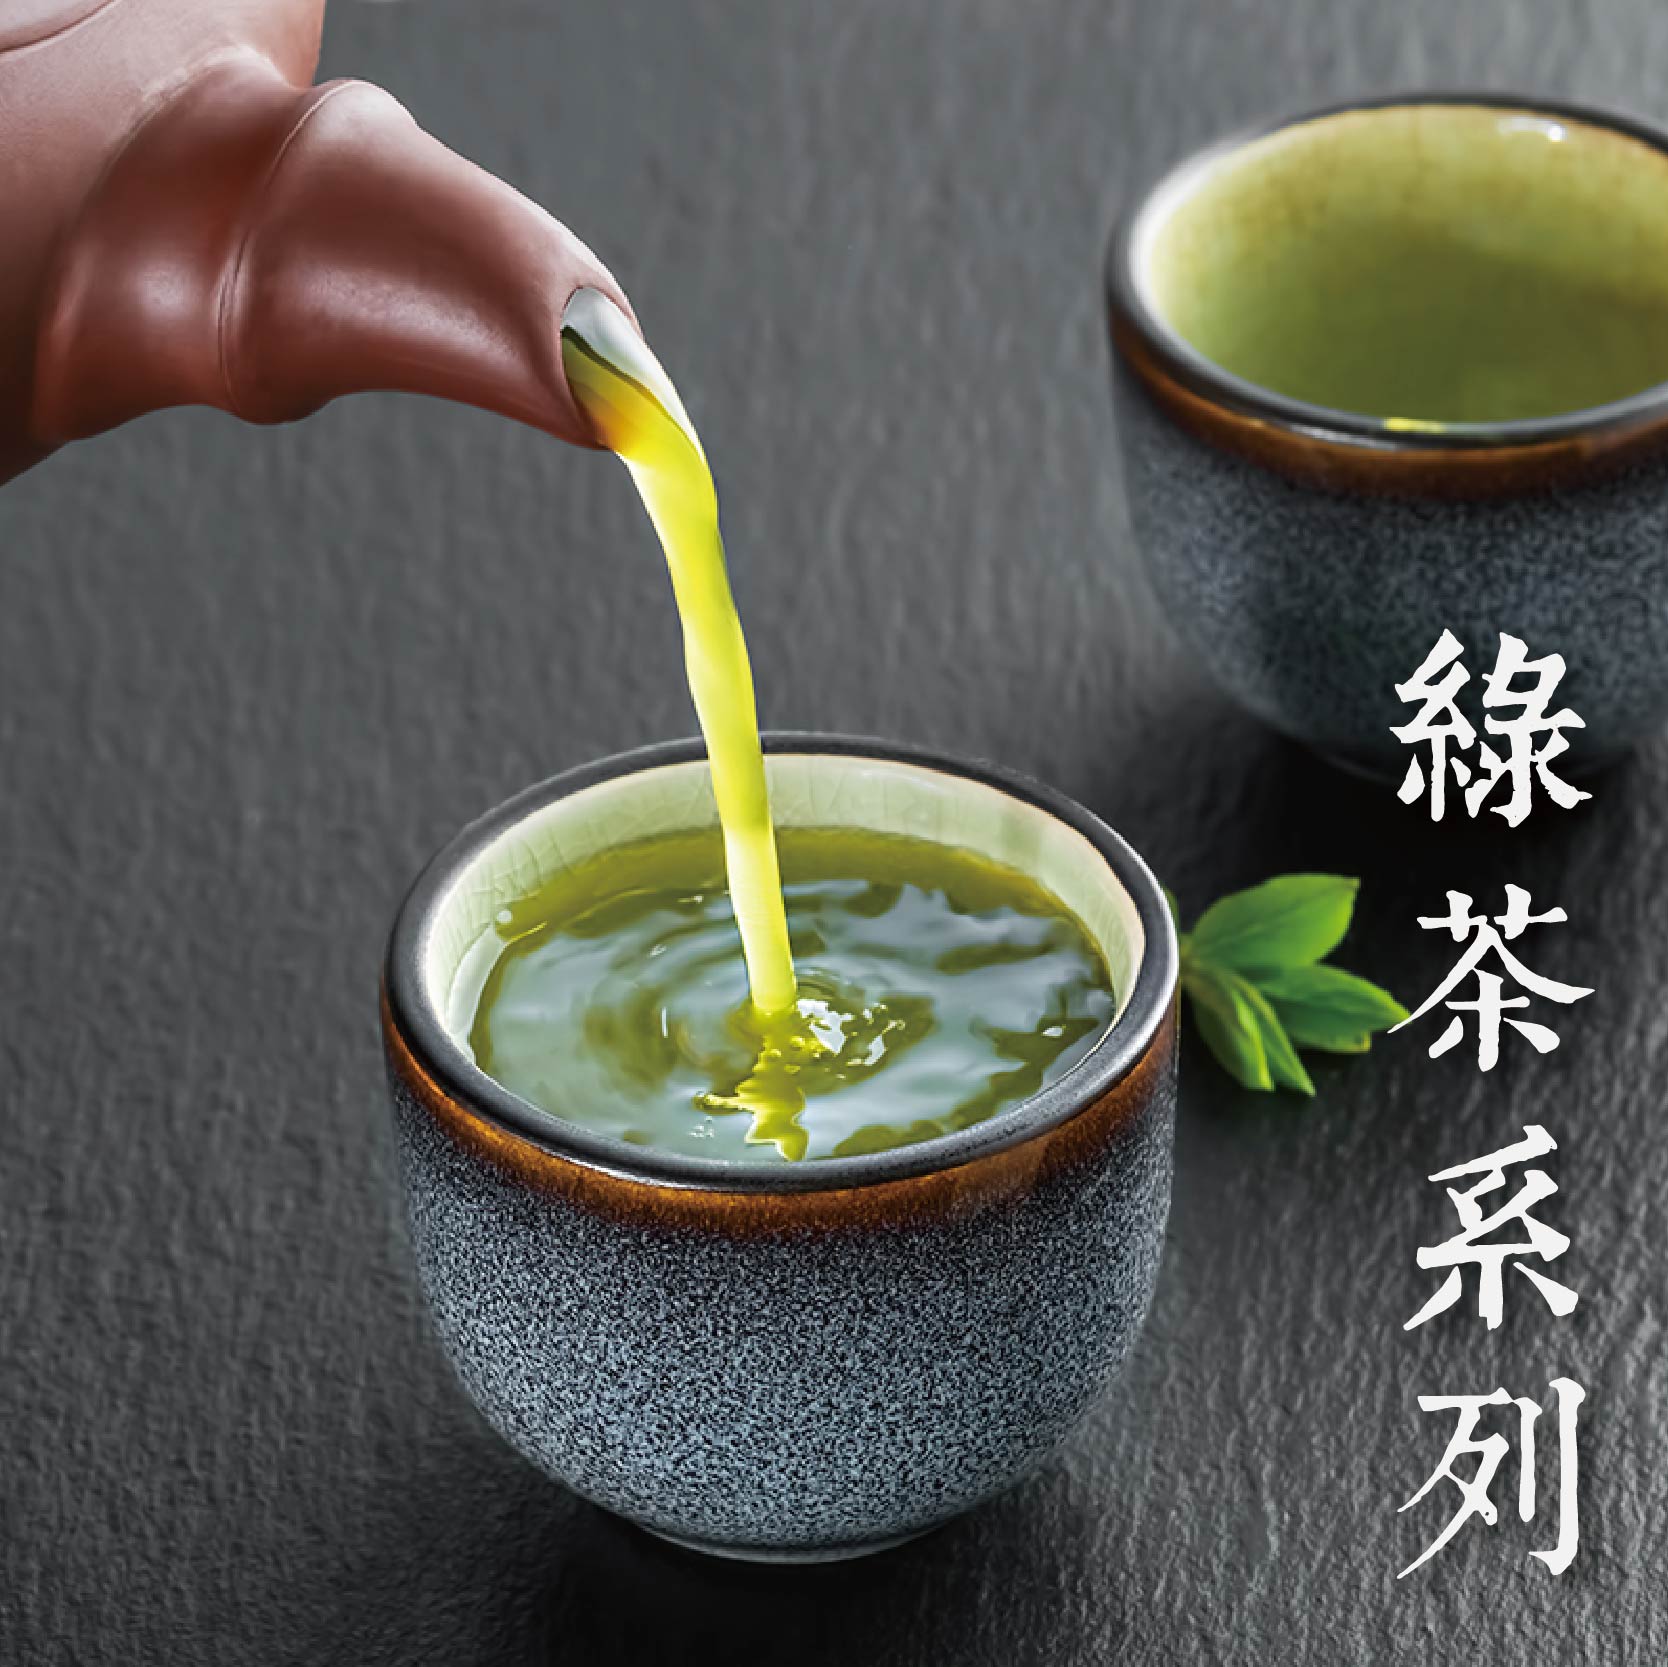 綠茶系列